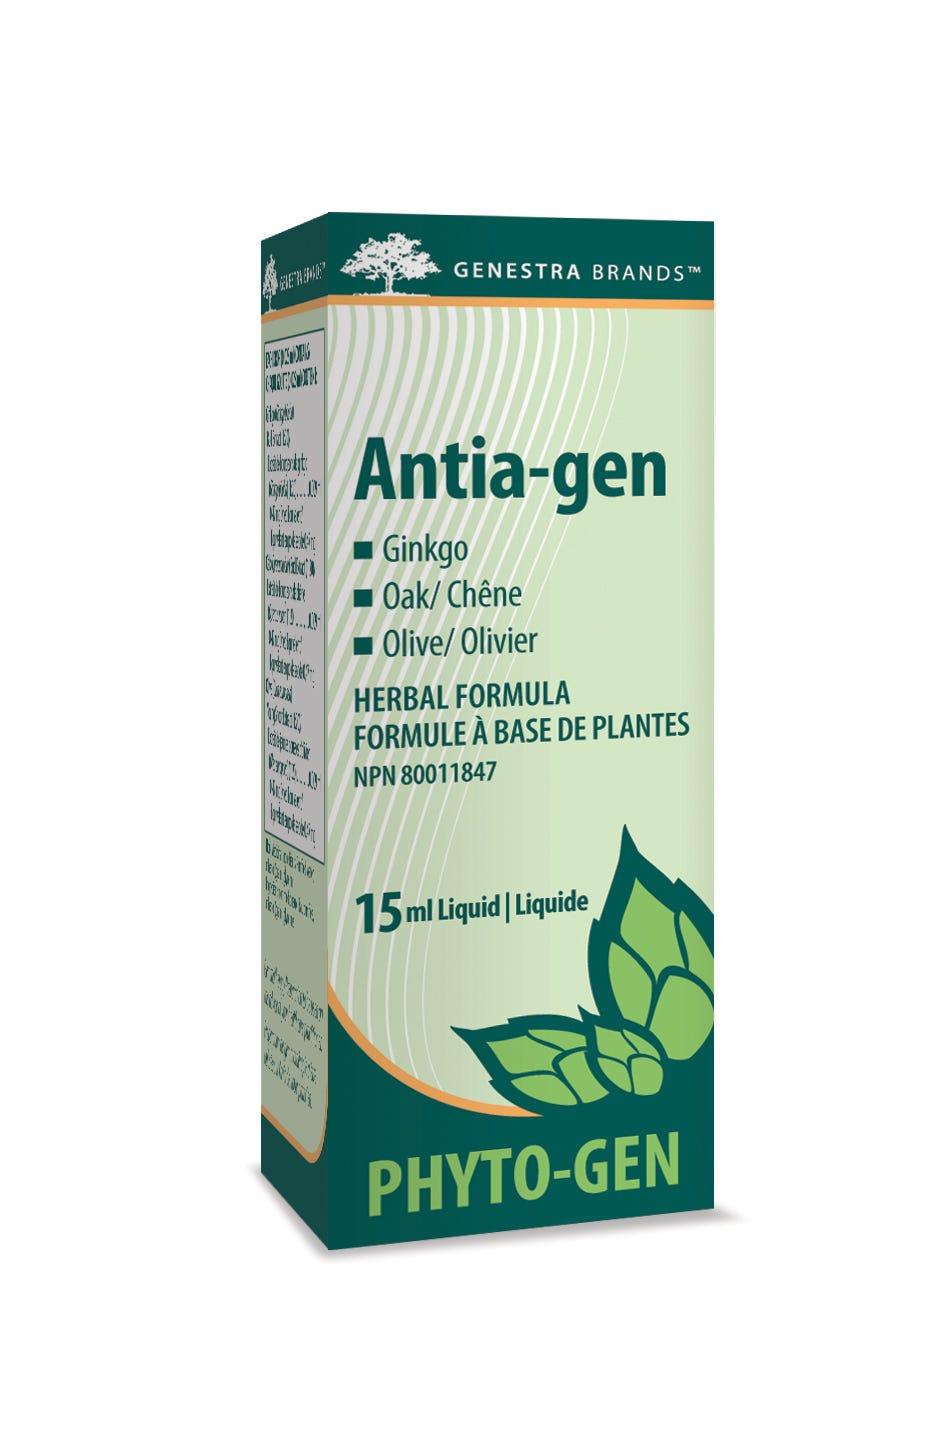 Genestra Brands Phyto-gen Antia-gen 15ml